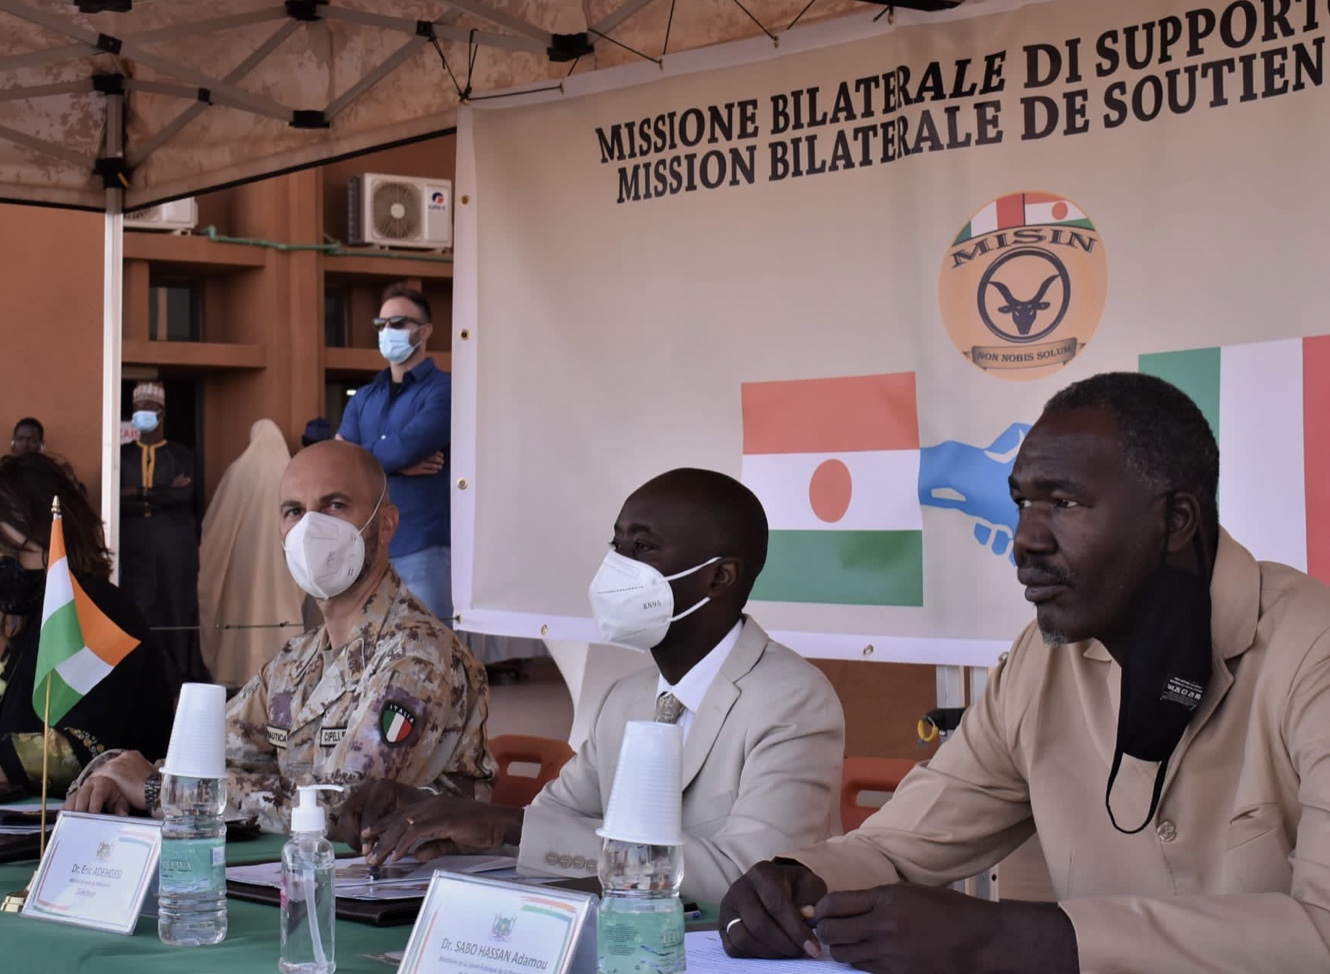 Défense-Maeci au Niger : la MISIN et l'Ambassade d'Italie livrent du matériel médical à l'hôpital de Niamey